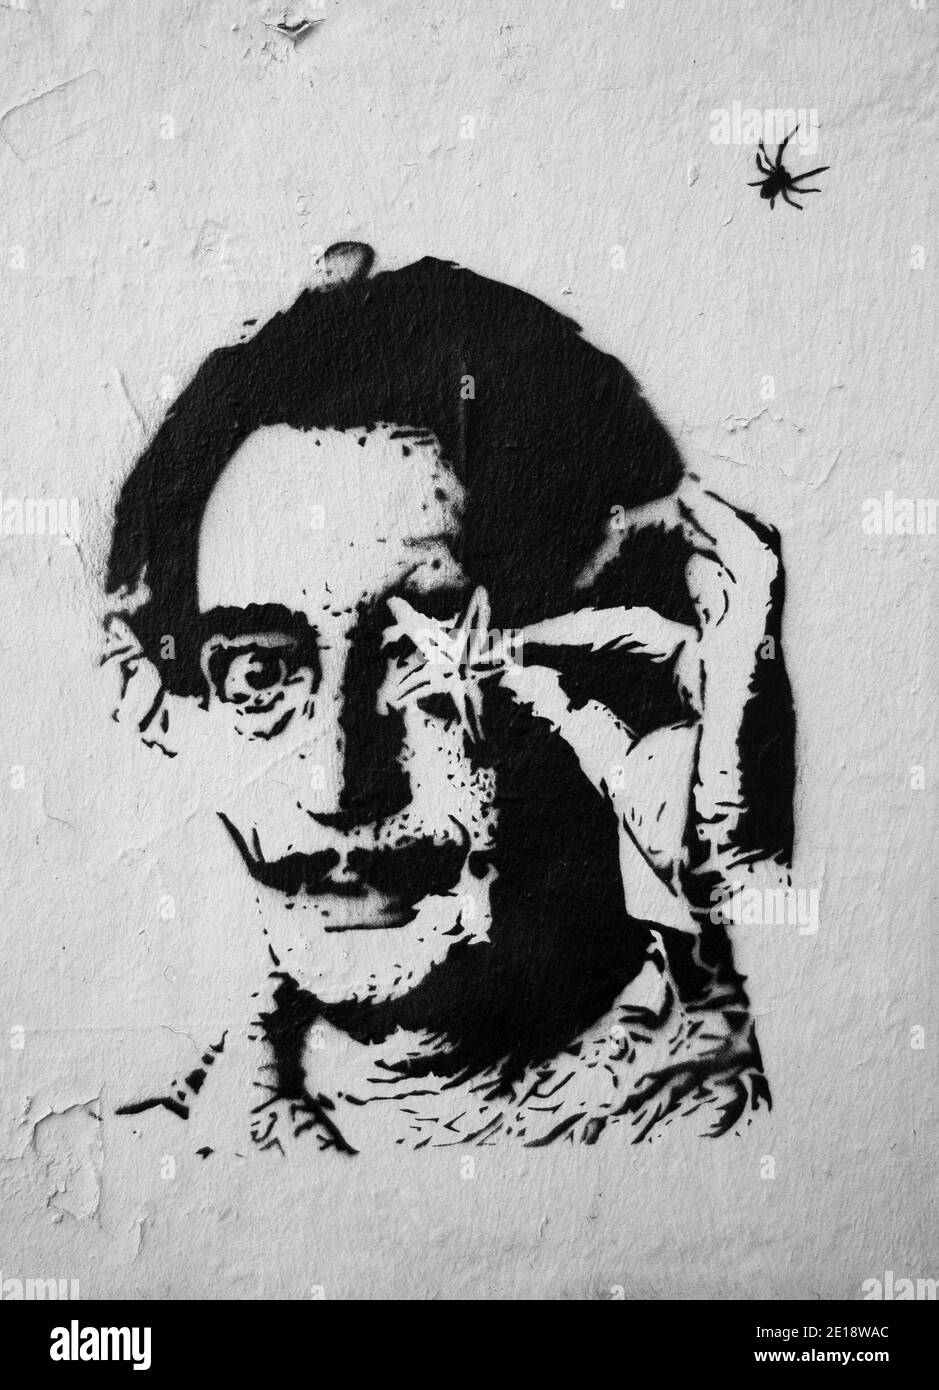 Ambiance des rues parisiennes. Portrait de graffiti Salvador Dali avec étoile de mer et araignée (pochoir) sur le mur de la vieille maison. Photo noir et blanc Banque D'Images